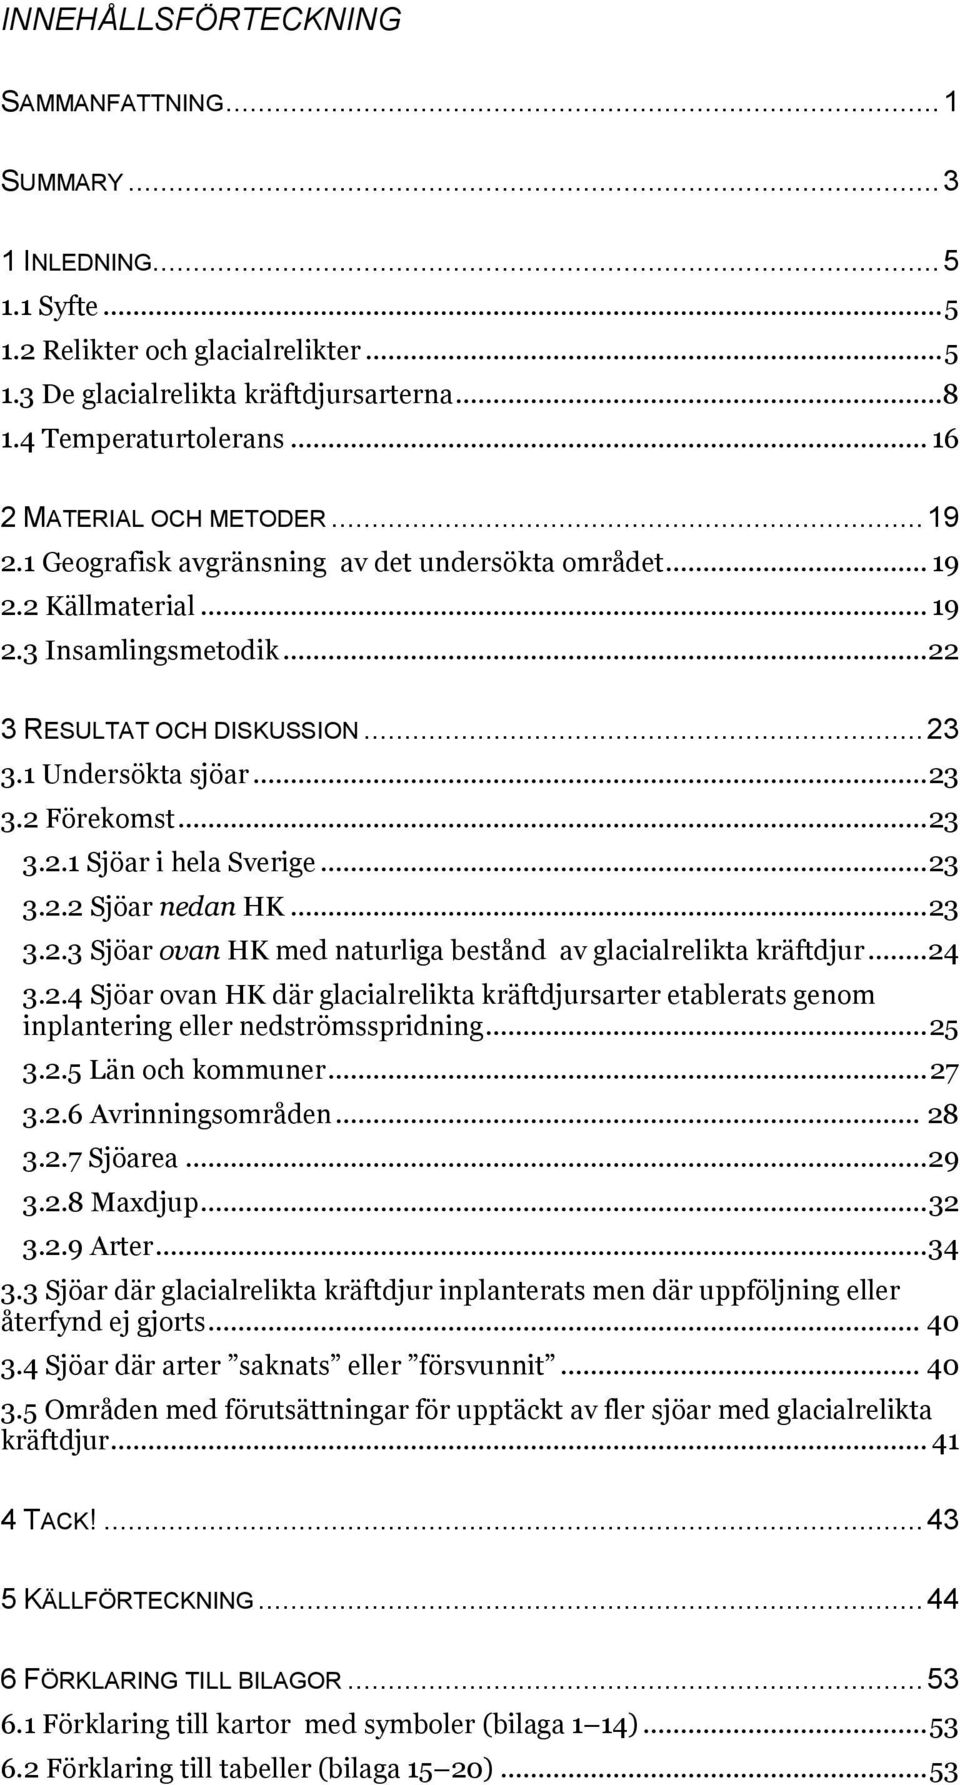 .. 23 3.2 Förekomst... 23 3.2.1 Sjöar i hela Sverige... 23 3.2.2 Sjöar nedan HK... 23 3.2.3 Sjöar ovan HK med naturliga bestånd av glacialrelikta kräftdjur... 24 3.2.4 Sjöar ovan HK där glacialrelikta kräftdjursarter etablerats genom inplantering eller nedströmsspridning.